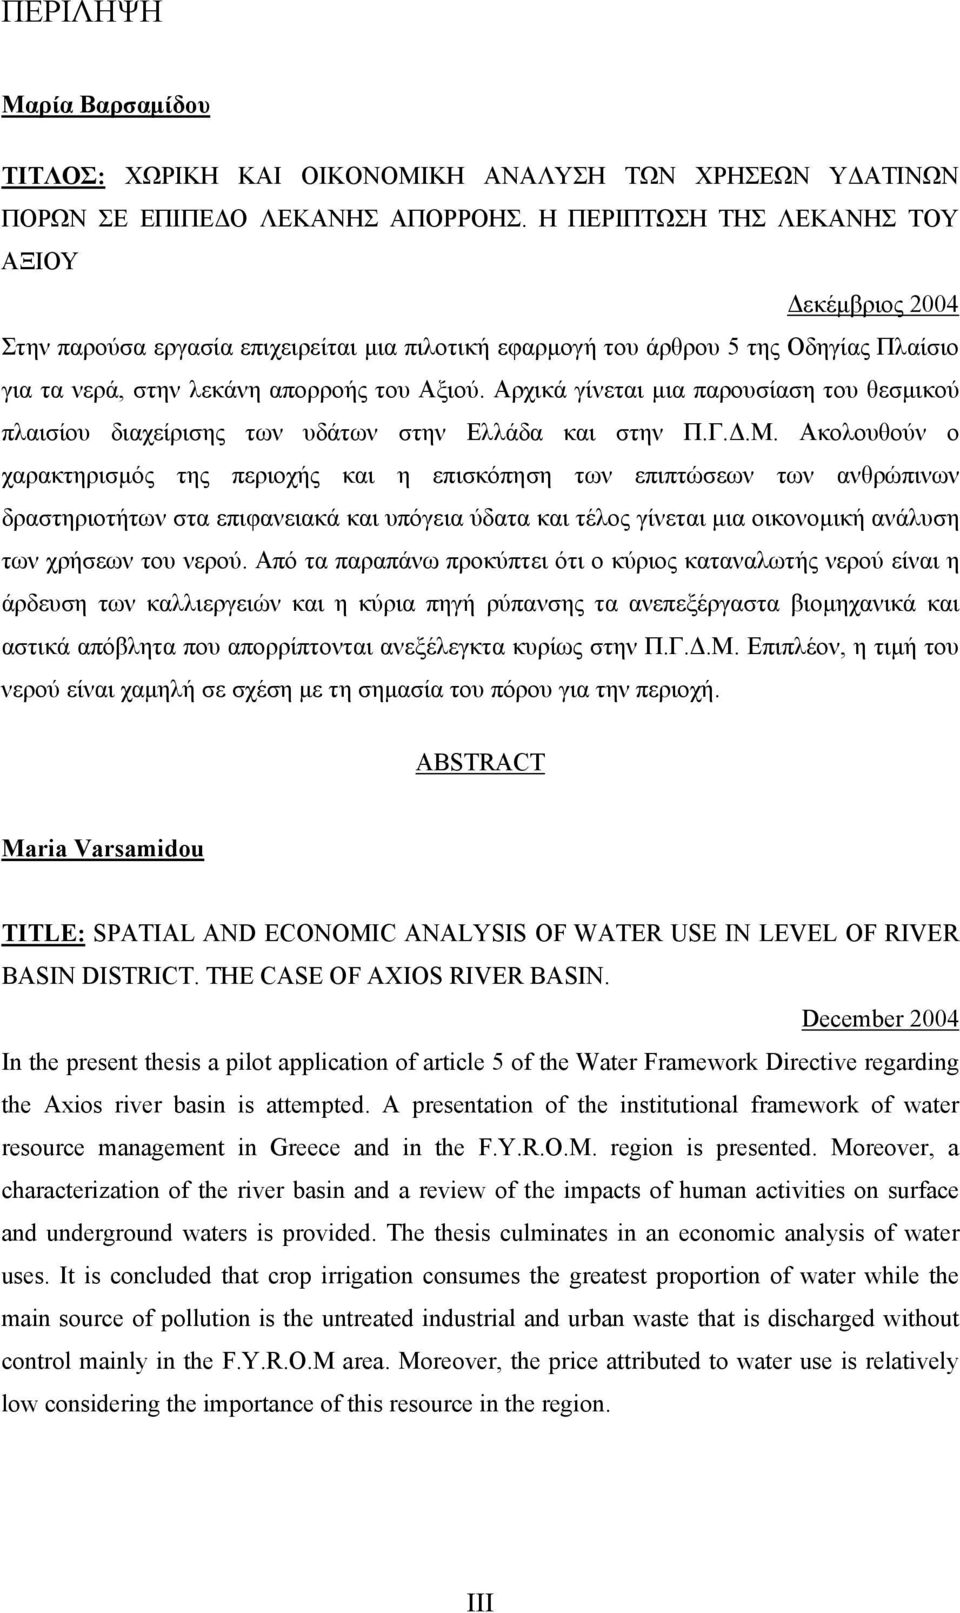 Αρχικά γίνεται µια παρουσίαση του θεσµικού πλαισίου διαχείρισης των υδάτων στην Ελλάδα και στην Π.Γ..Μ.